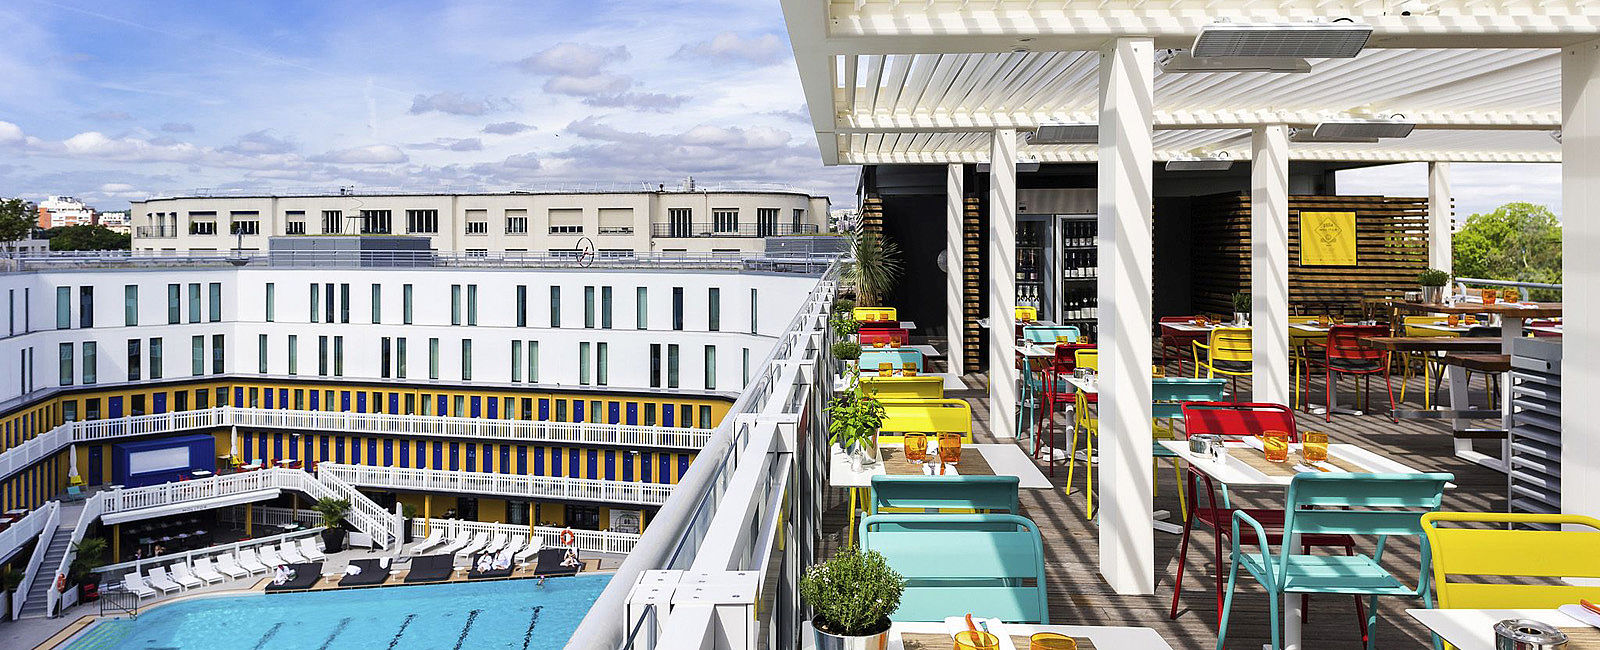 HOTELTEST
 Hotel Molitor Paris 
 Ikonische Architektur und Hängende Gärten 